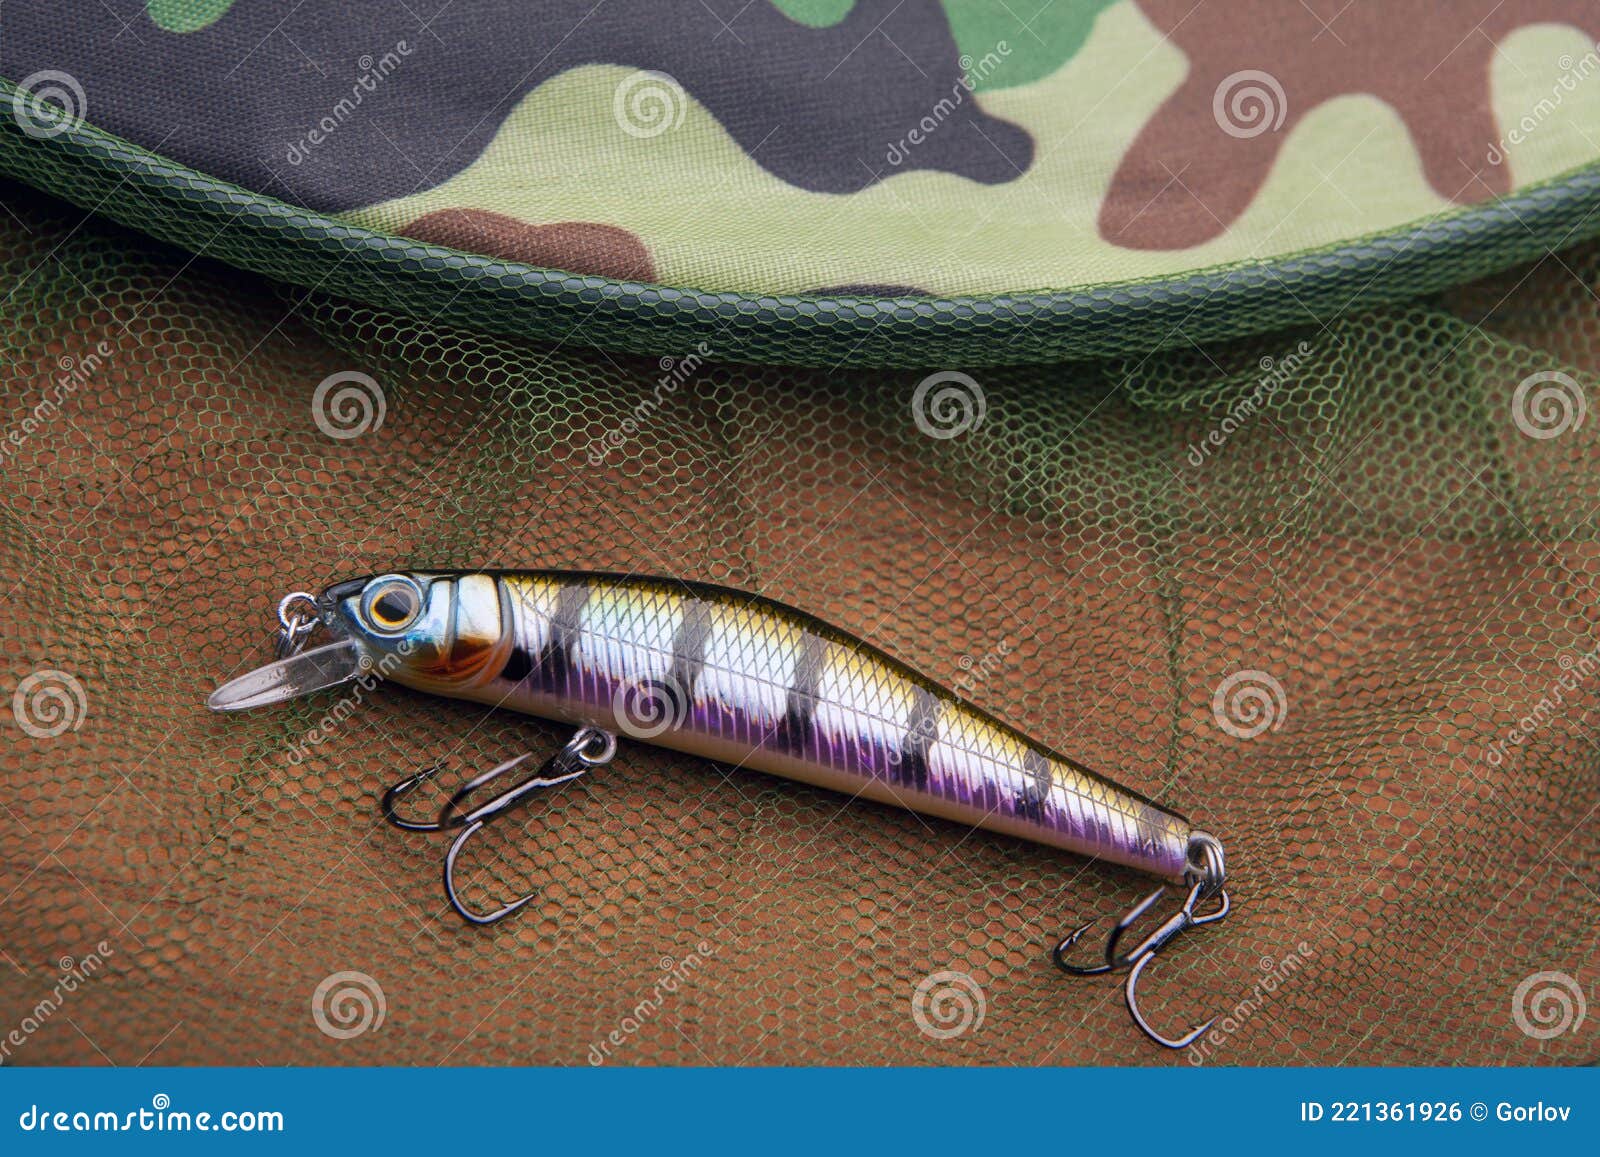 Image of fishing bait net stock photo. Image of background - 221361926